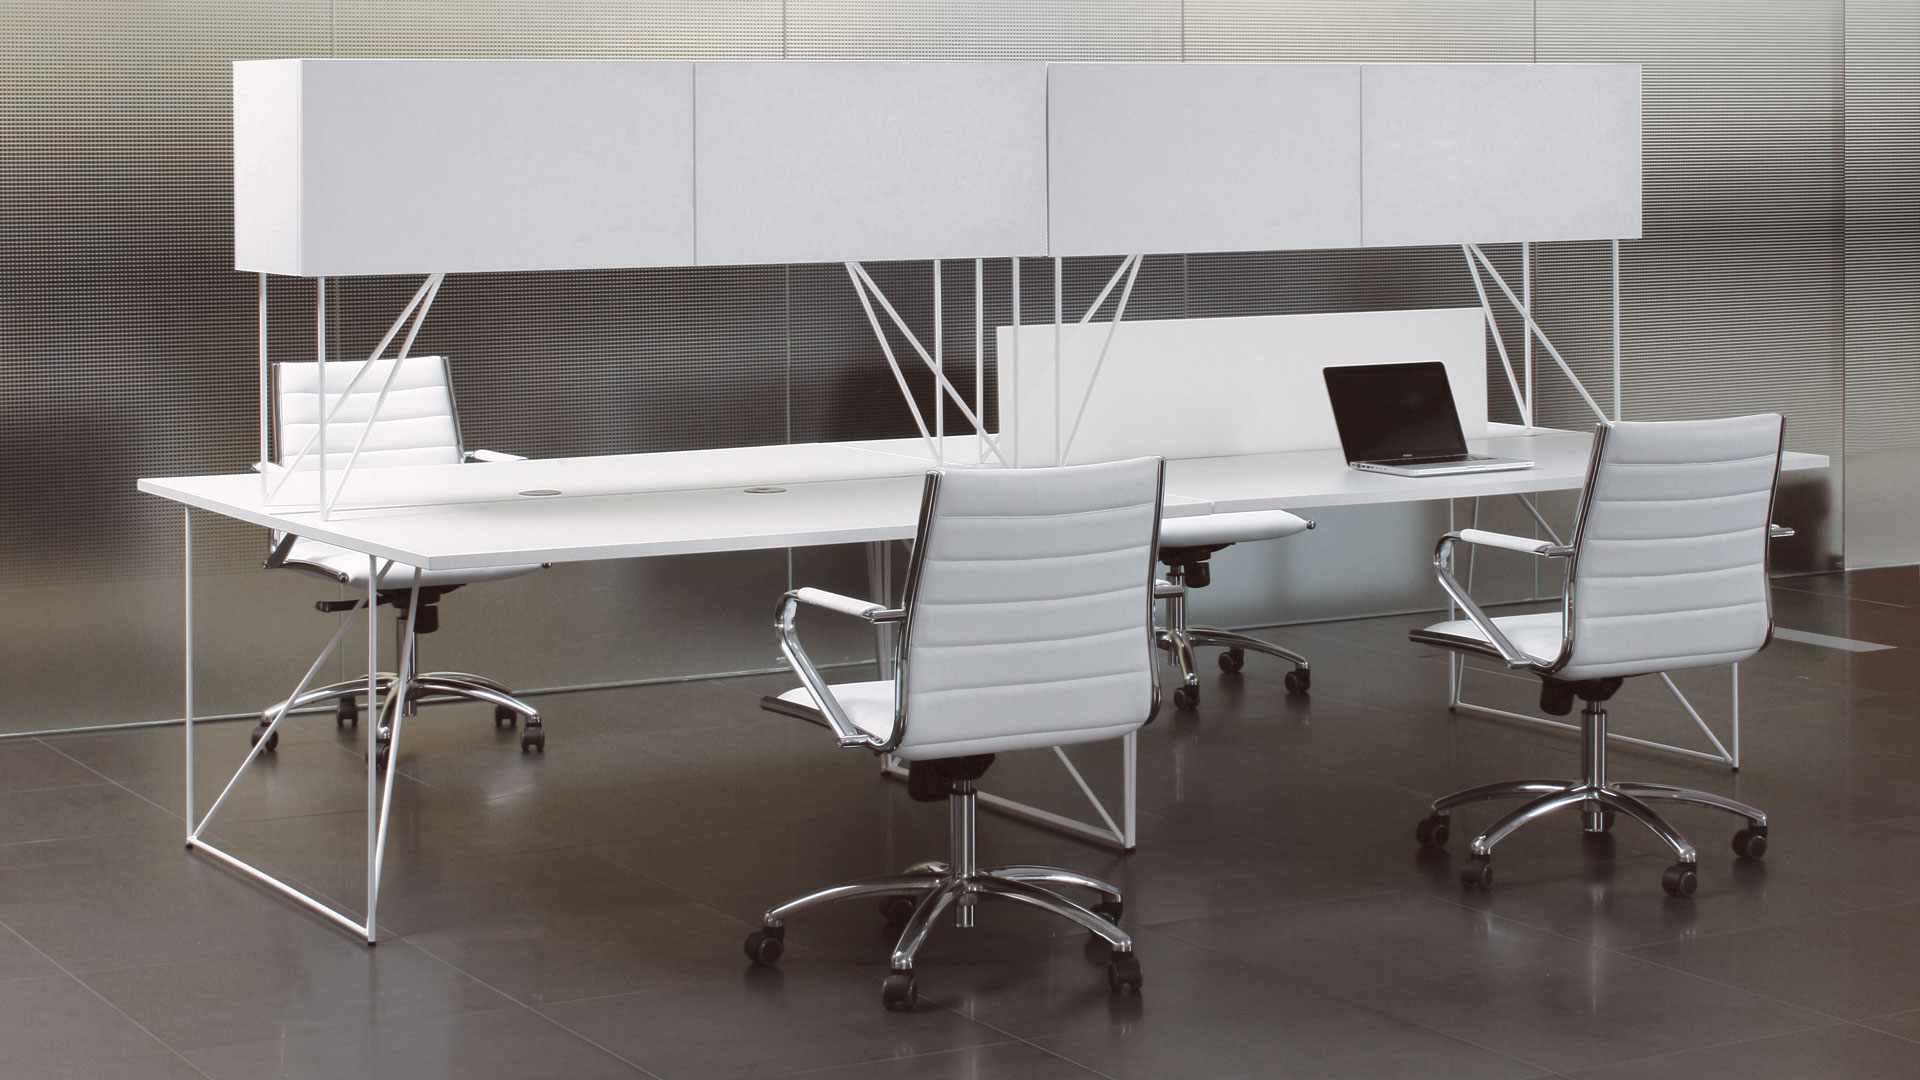 White Air bench desks with storage